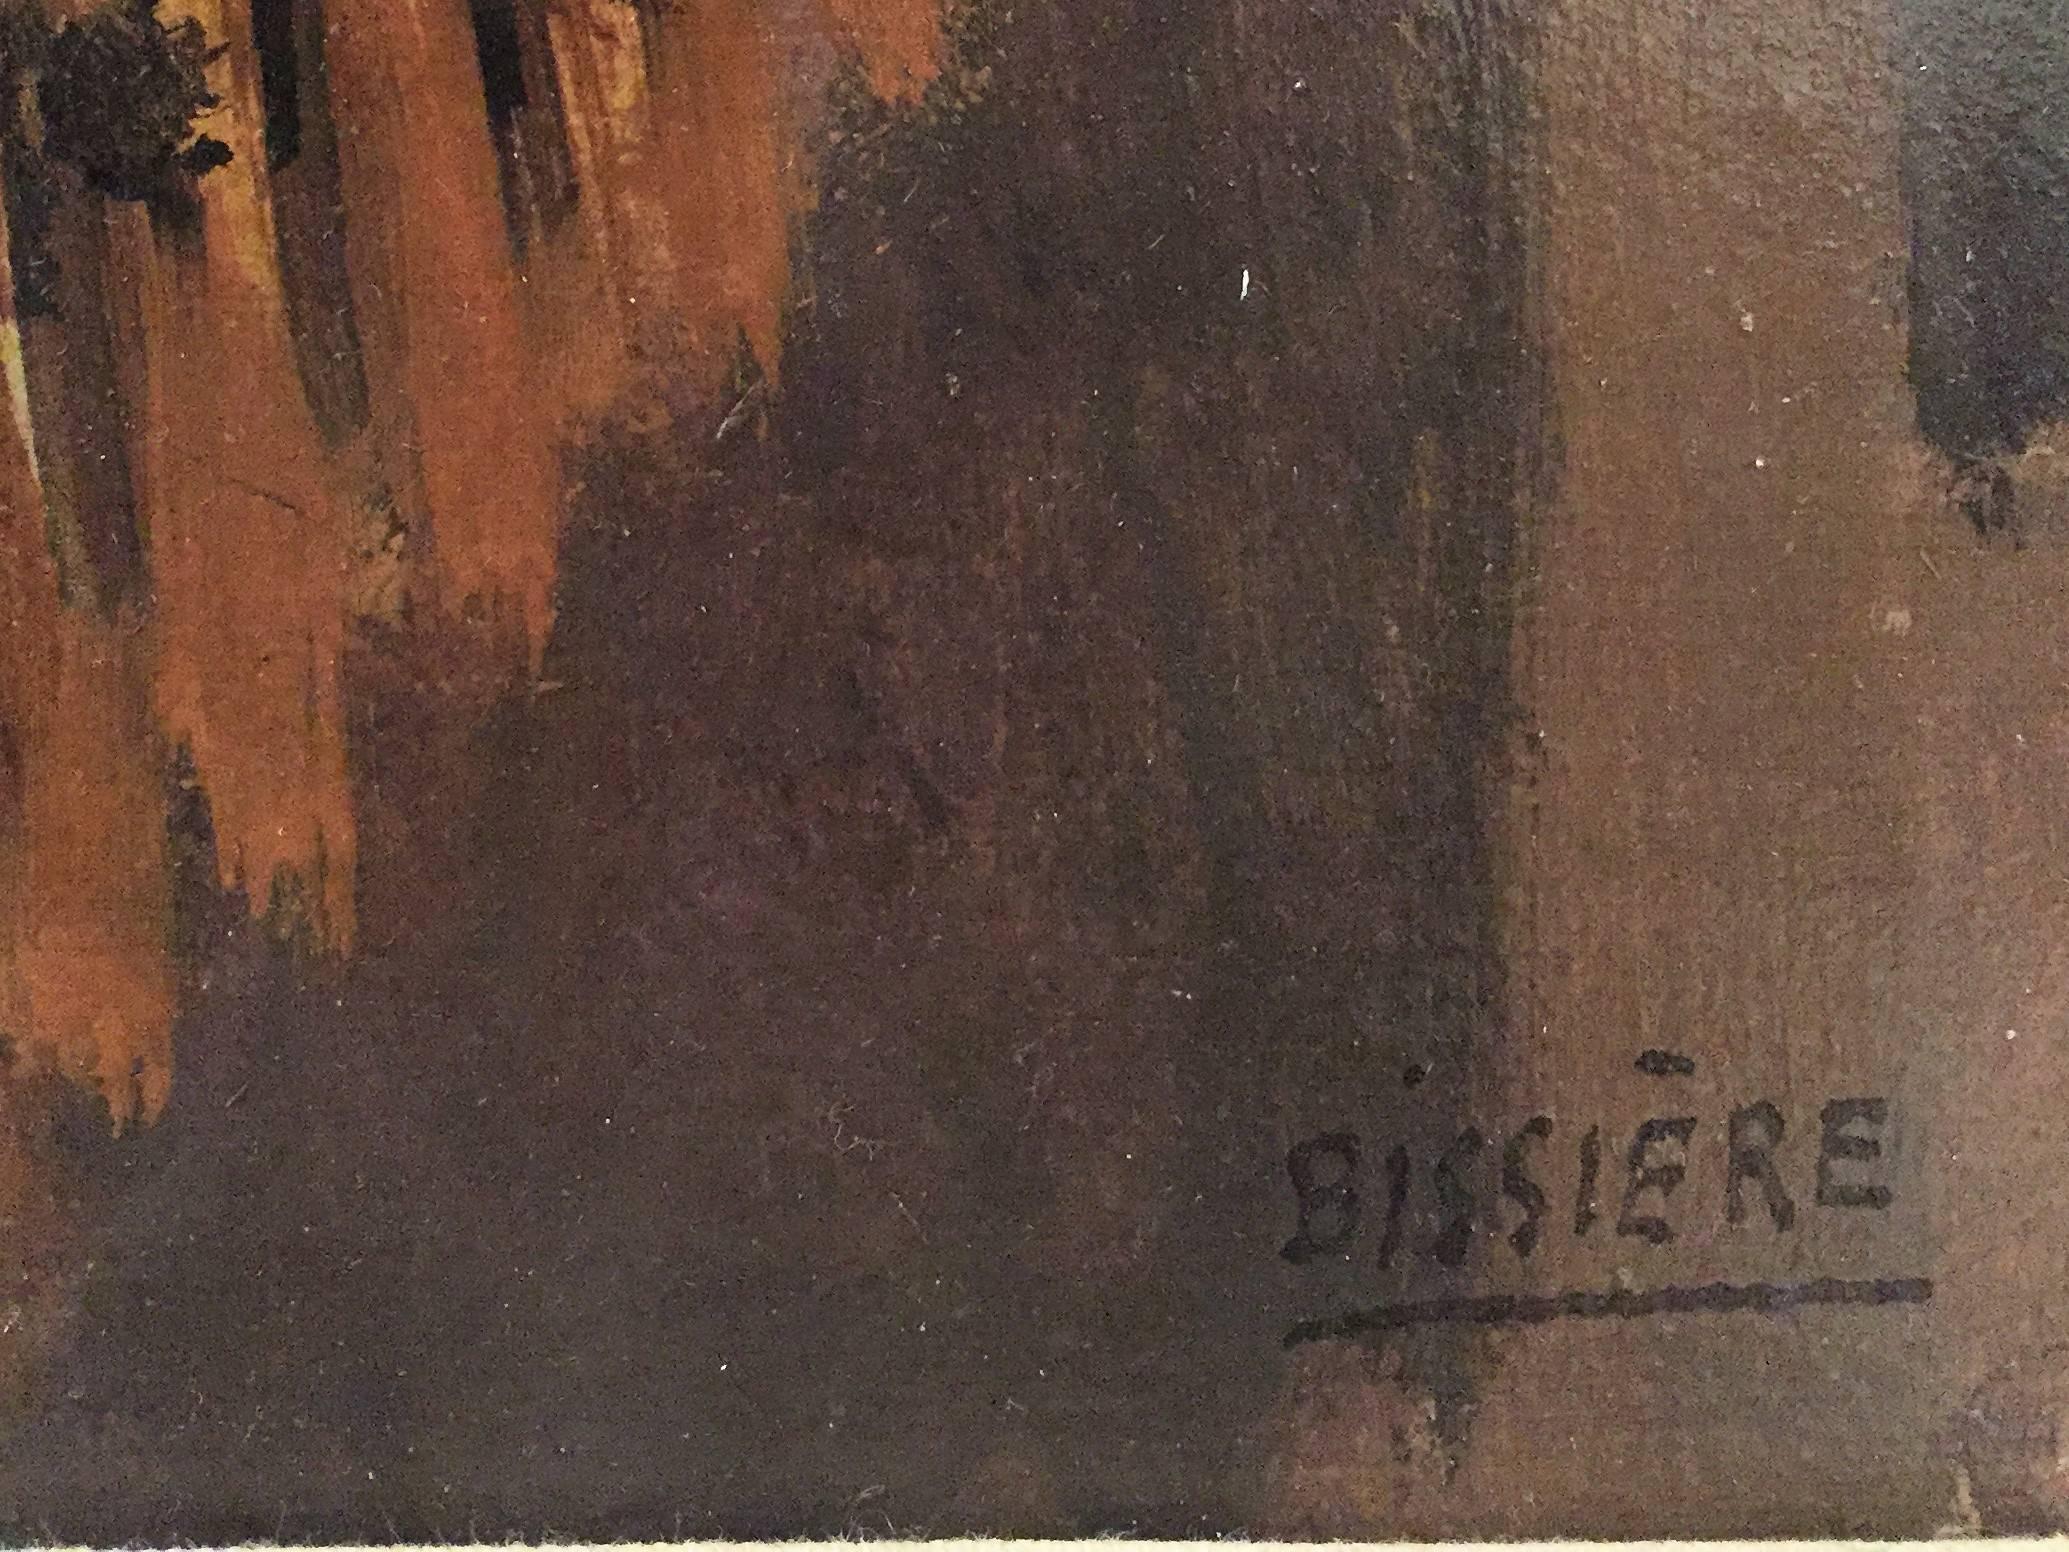 Roger Bissière (Villeréal, France, 1886 -  Boissiérettes, France, 1964)
Pot de fleur et tasse sur un gueridon, 1926 ca, oil on wood panel, signed lower right.

SIZE: cm 89 x 62
SIZE WITH FRAME: cm 107,5 x 81,5 x 5 

Provenance:	
Paris, private